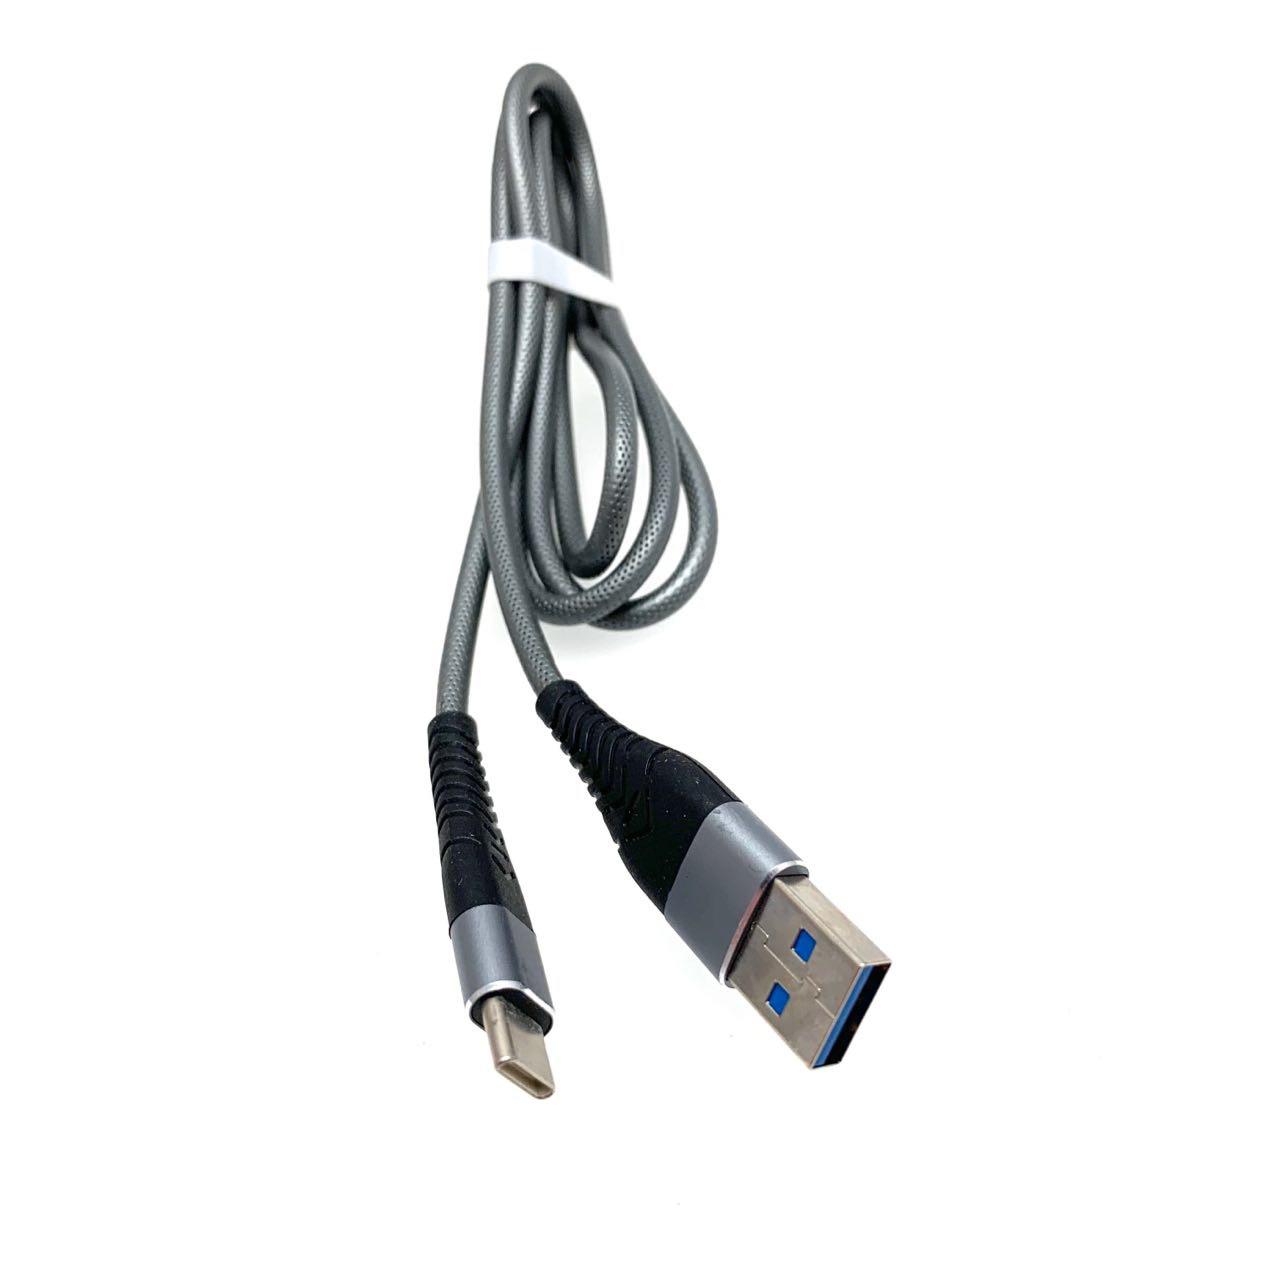 USB Дата-кабель "R18" Type-C USB 3.0 силиконовый эластичный, морозоустойчивый, 1 метр серебристого цвета, синие контакты.